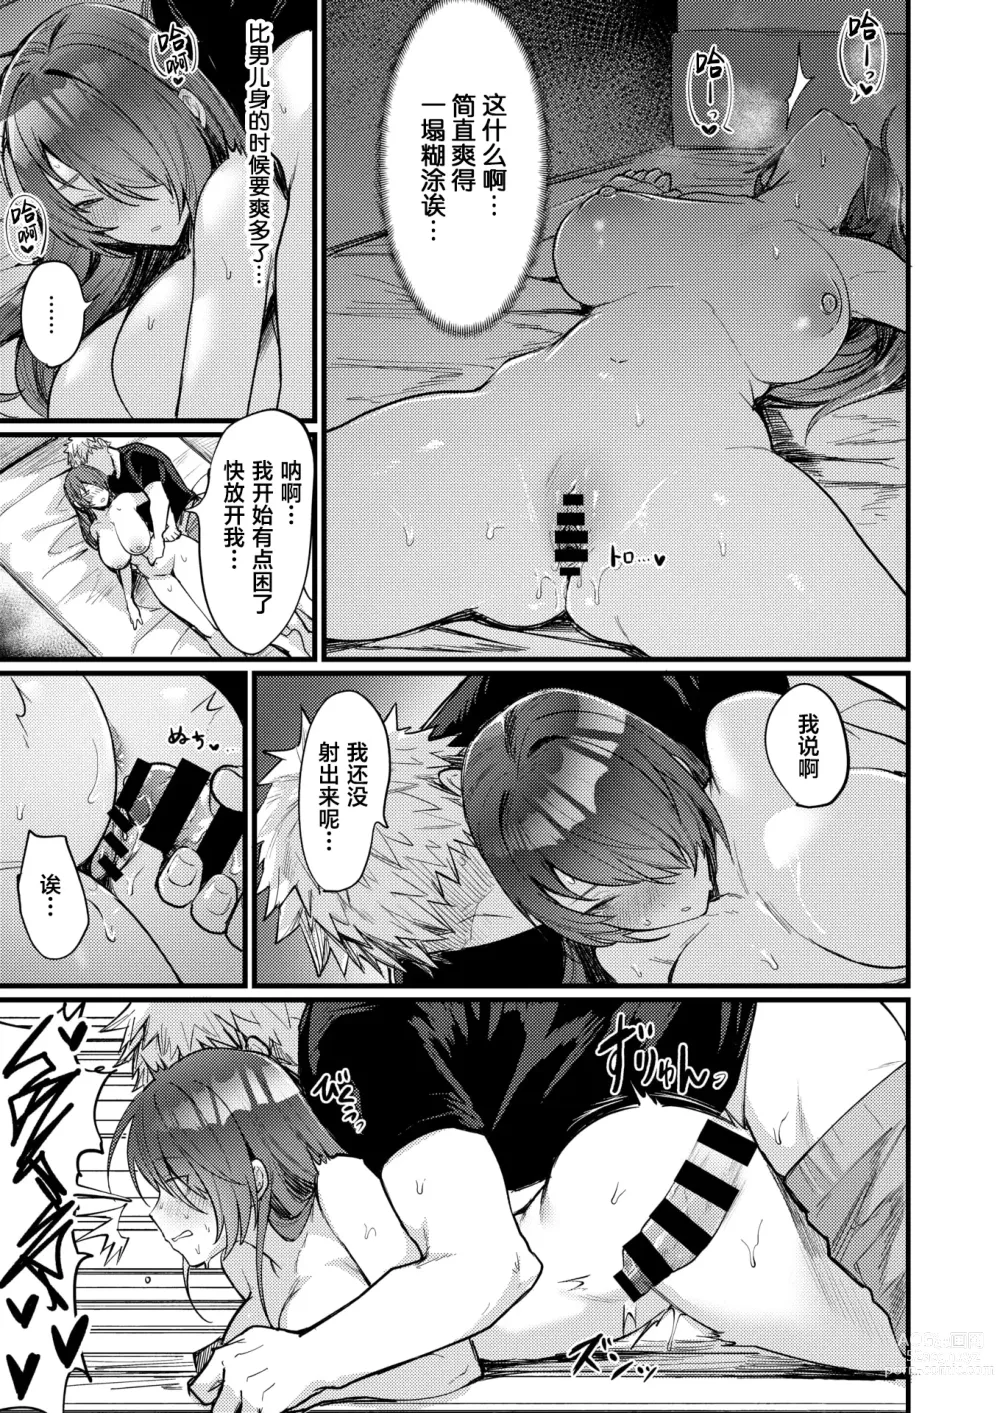 Page 17 of manga Shinya no TS Panic